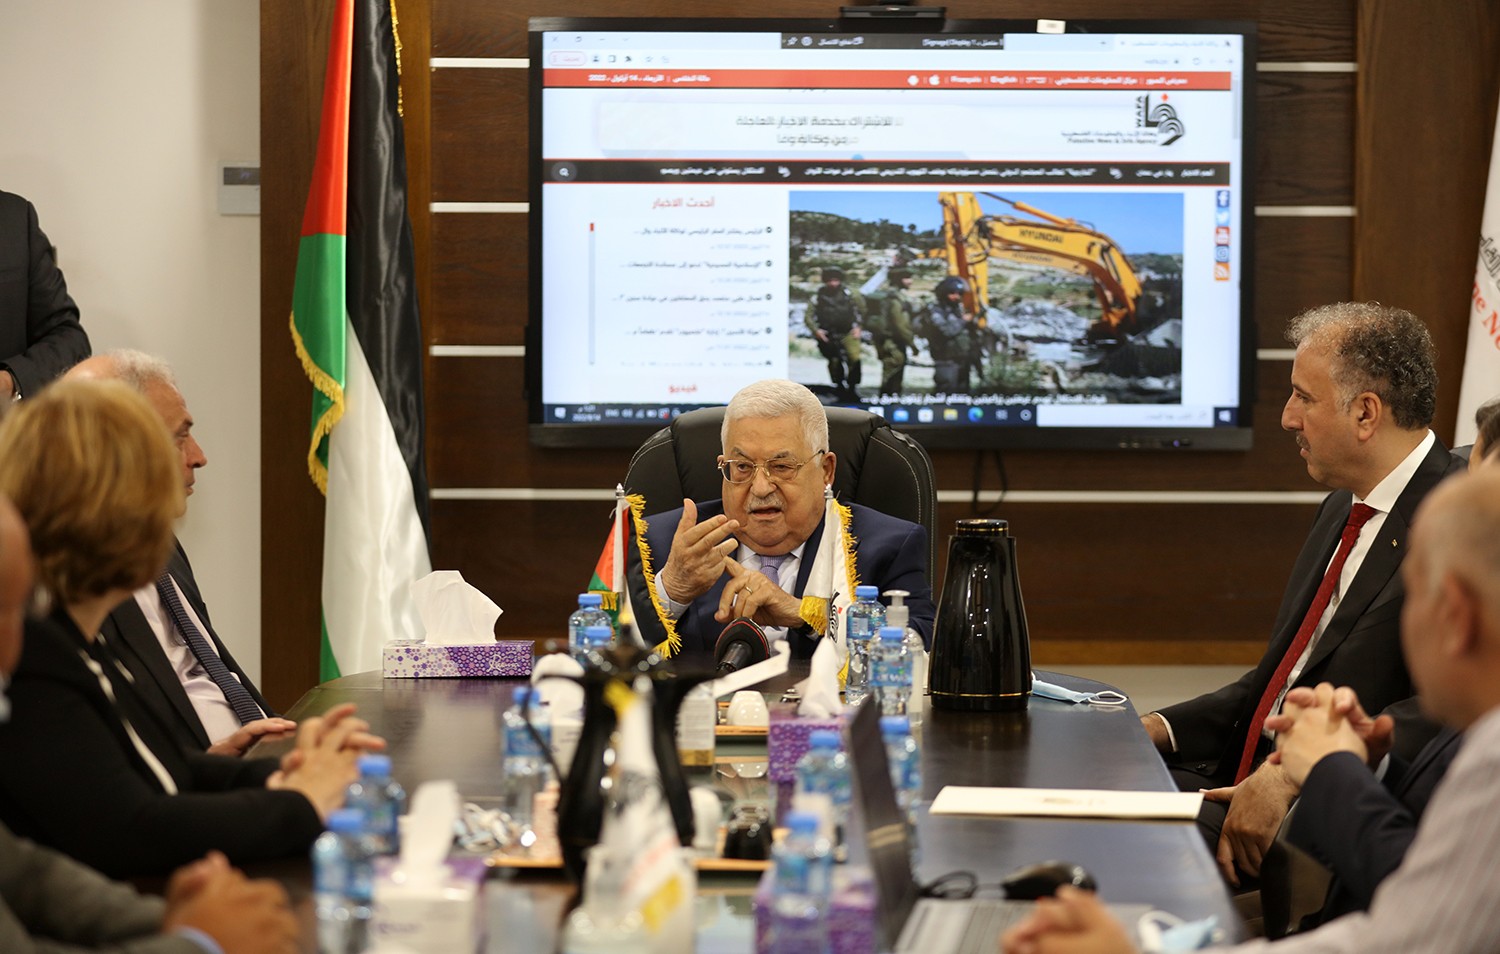 رام الله - الرئيس محمود عباس، يفتتح المقر المؤقت لوكالة الانباء والمعلومات الفلسطينية - وفا 5.jpg